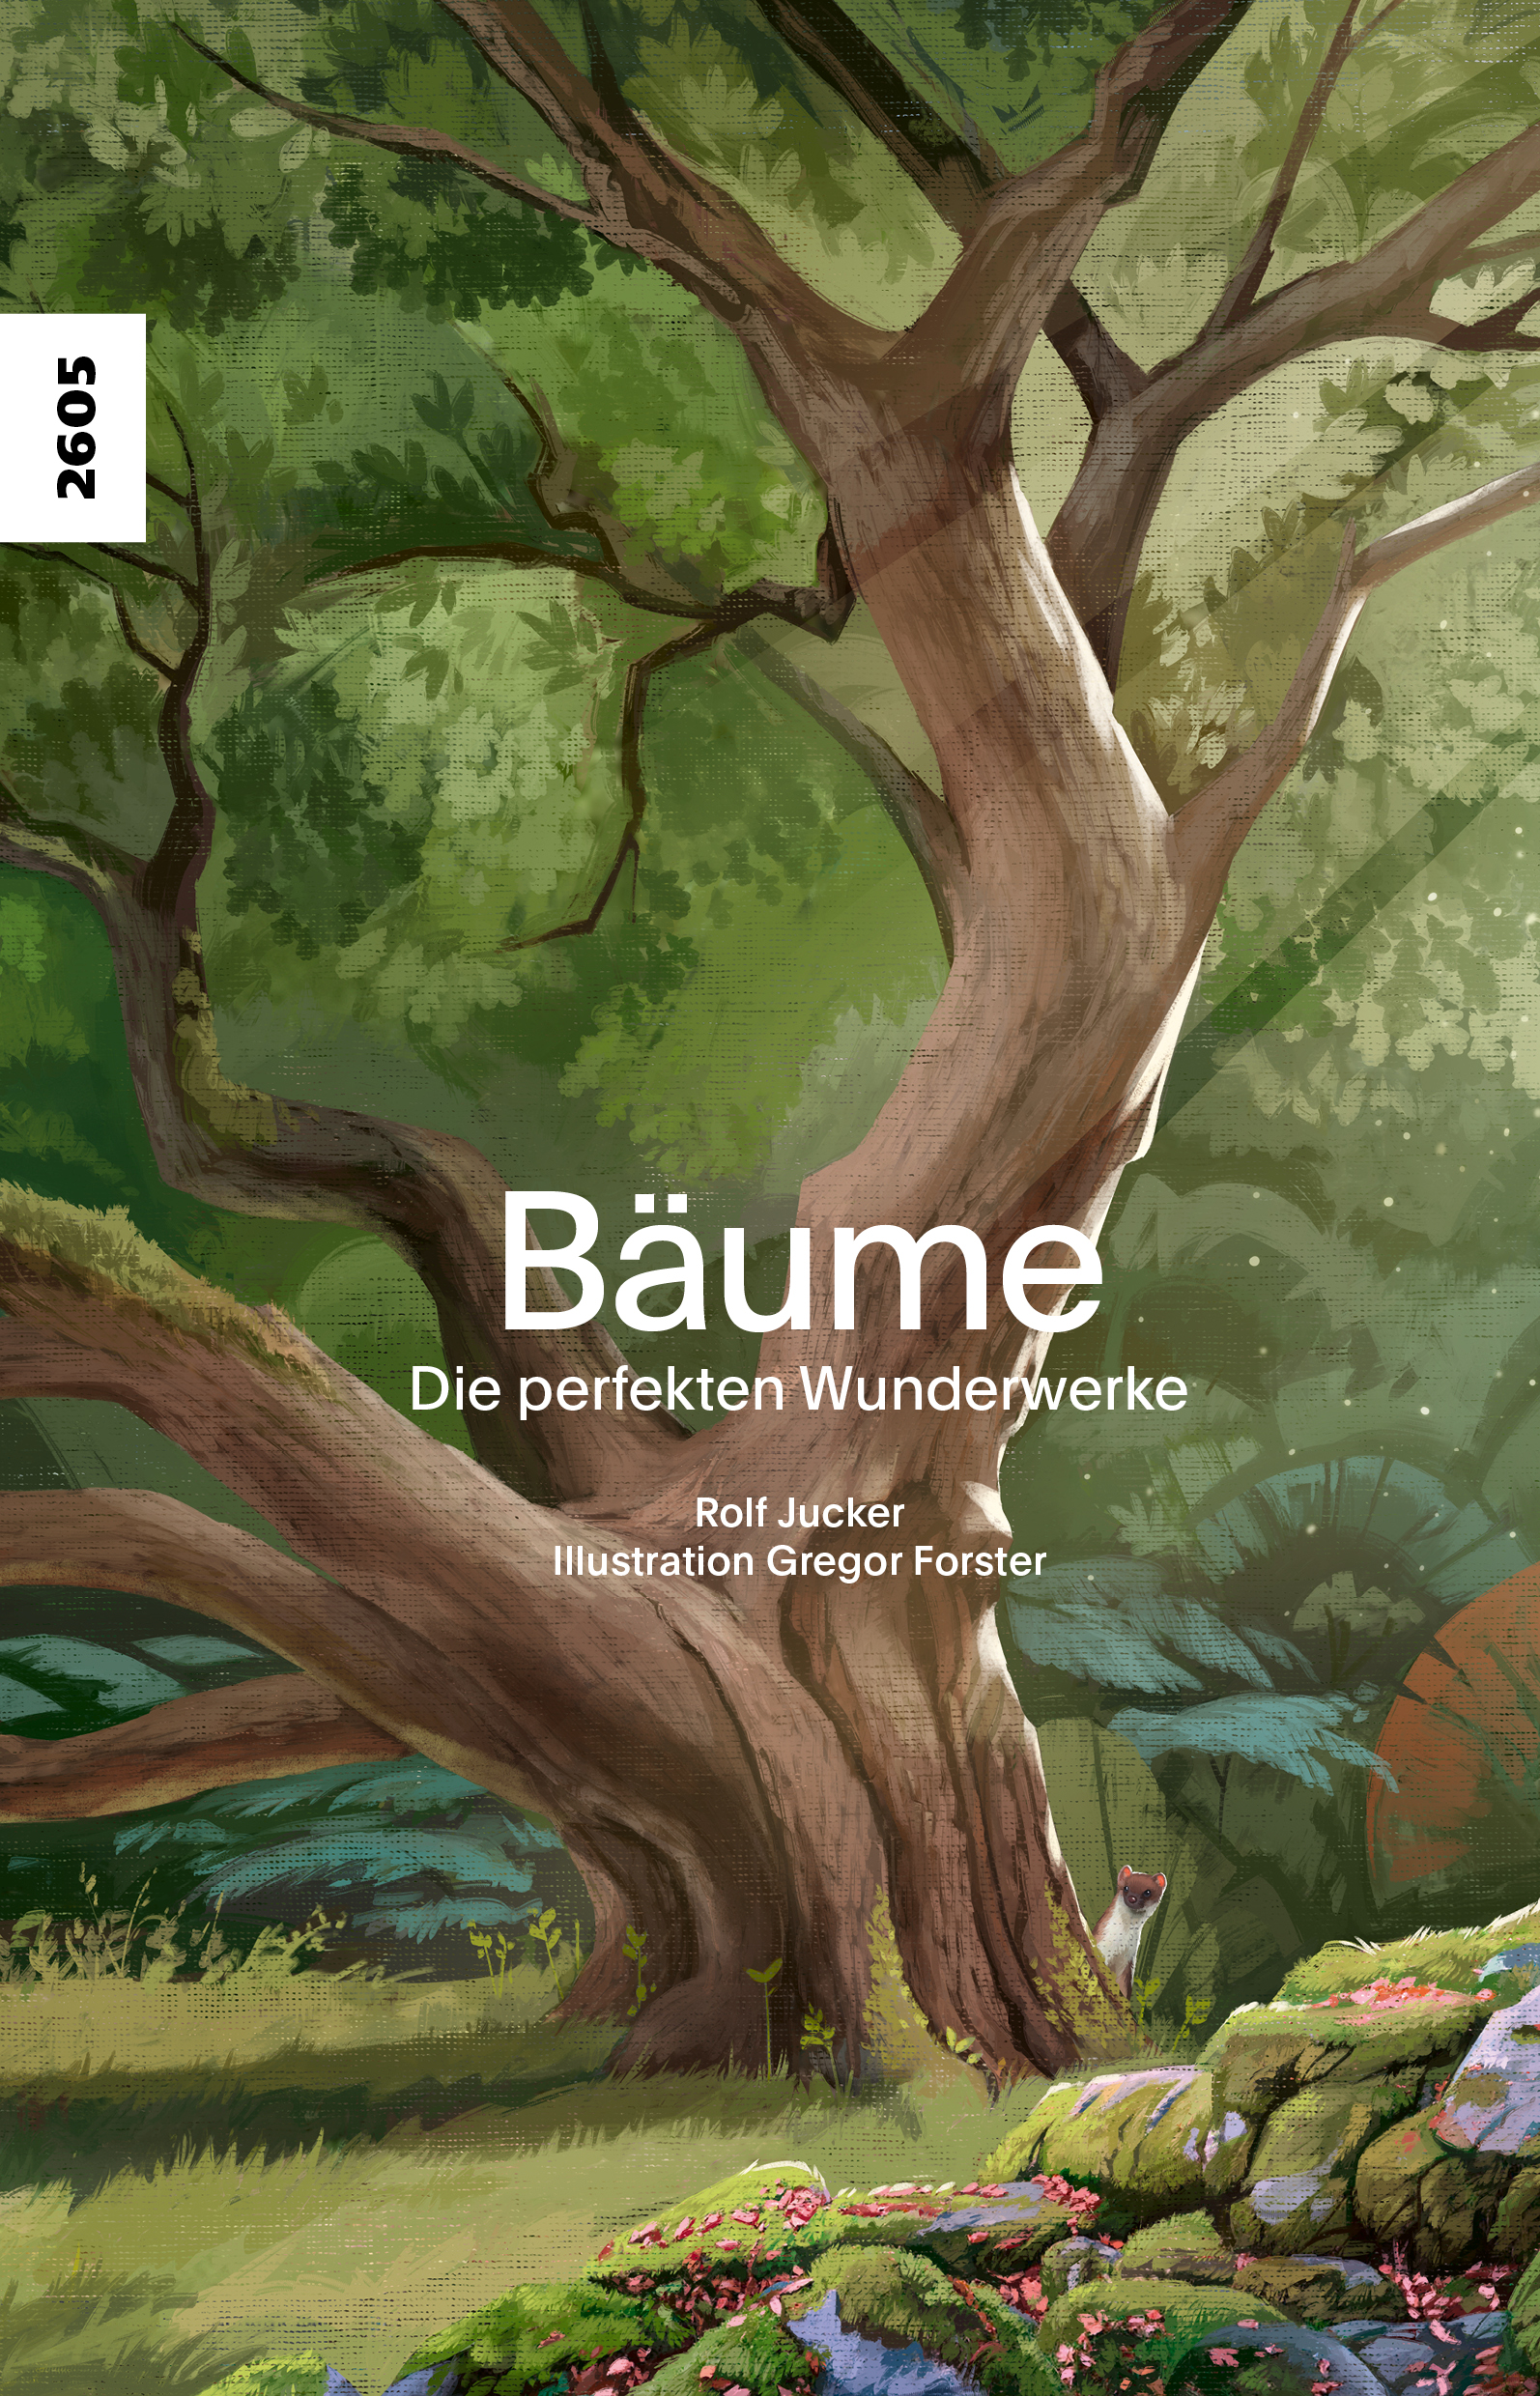 Baeume - die perfekten Wunderwerke, ein Sachbuch von Rolf Jucker, Illustration von Gregor Forster, SJW Verlag, Natur, Baum